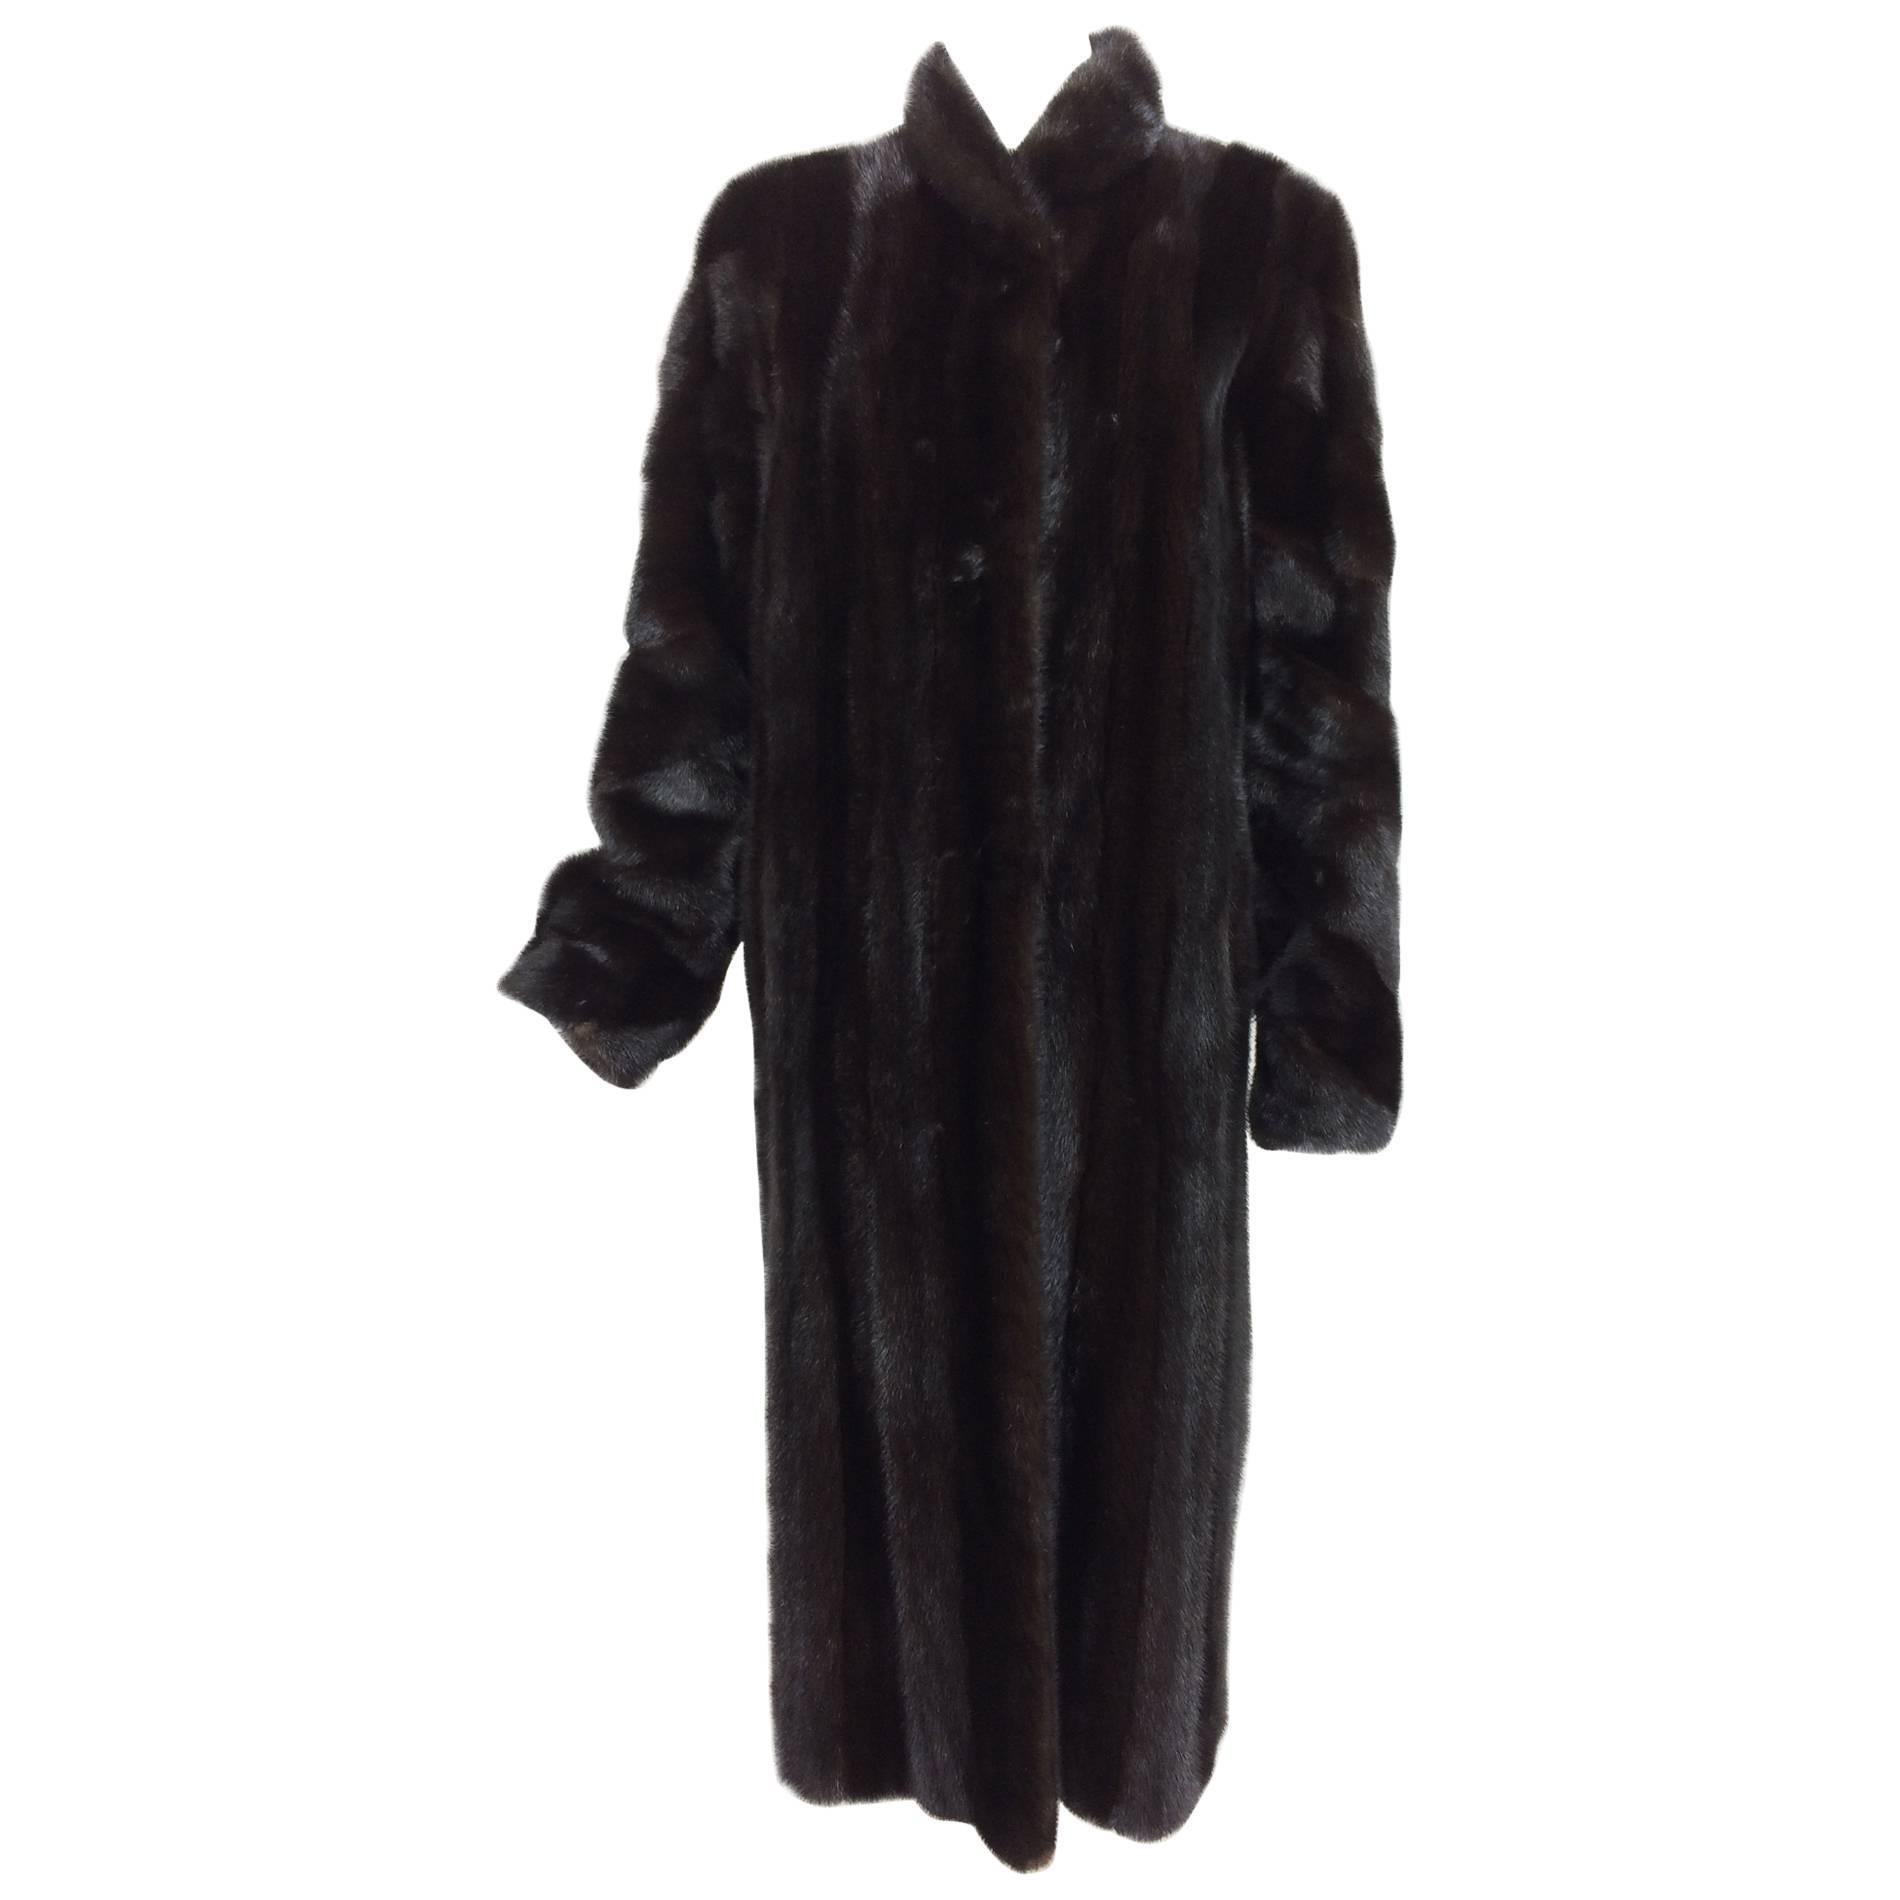 Birger Christensen Denmark Dark mink fur coat full length female skins 